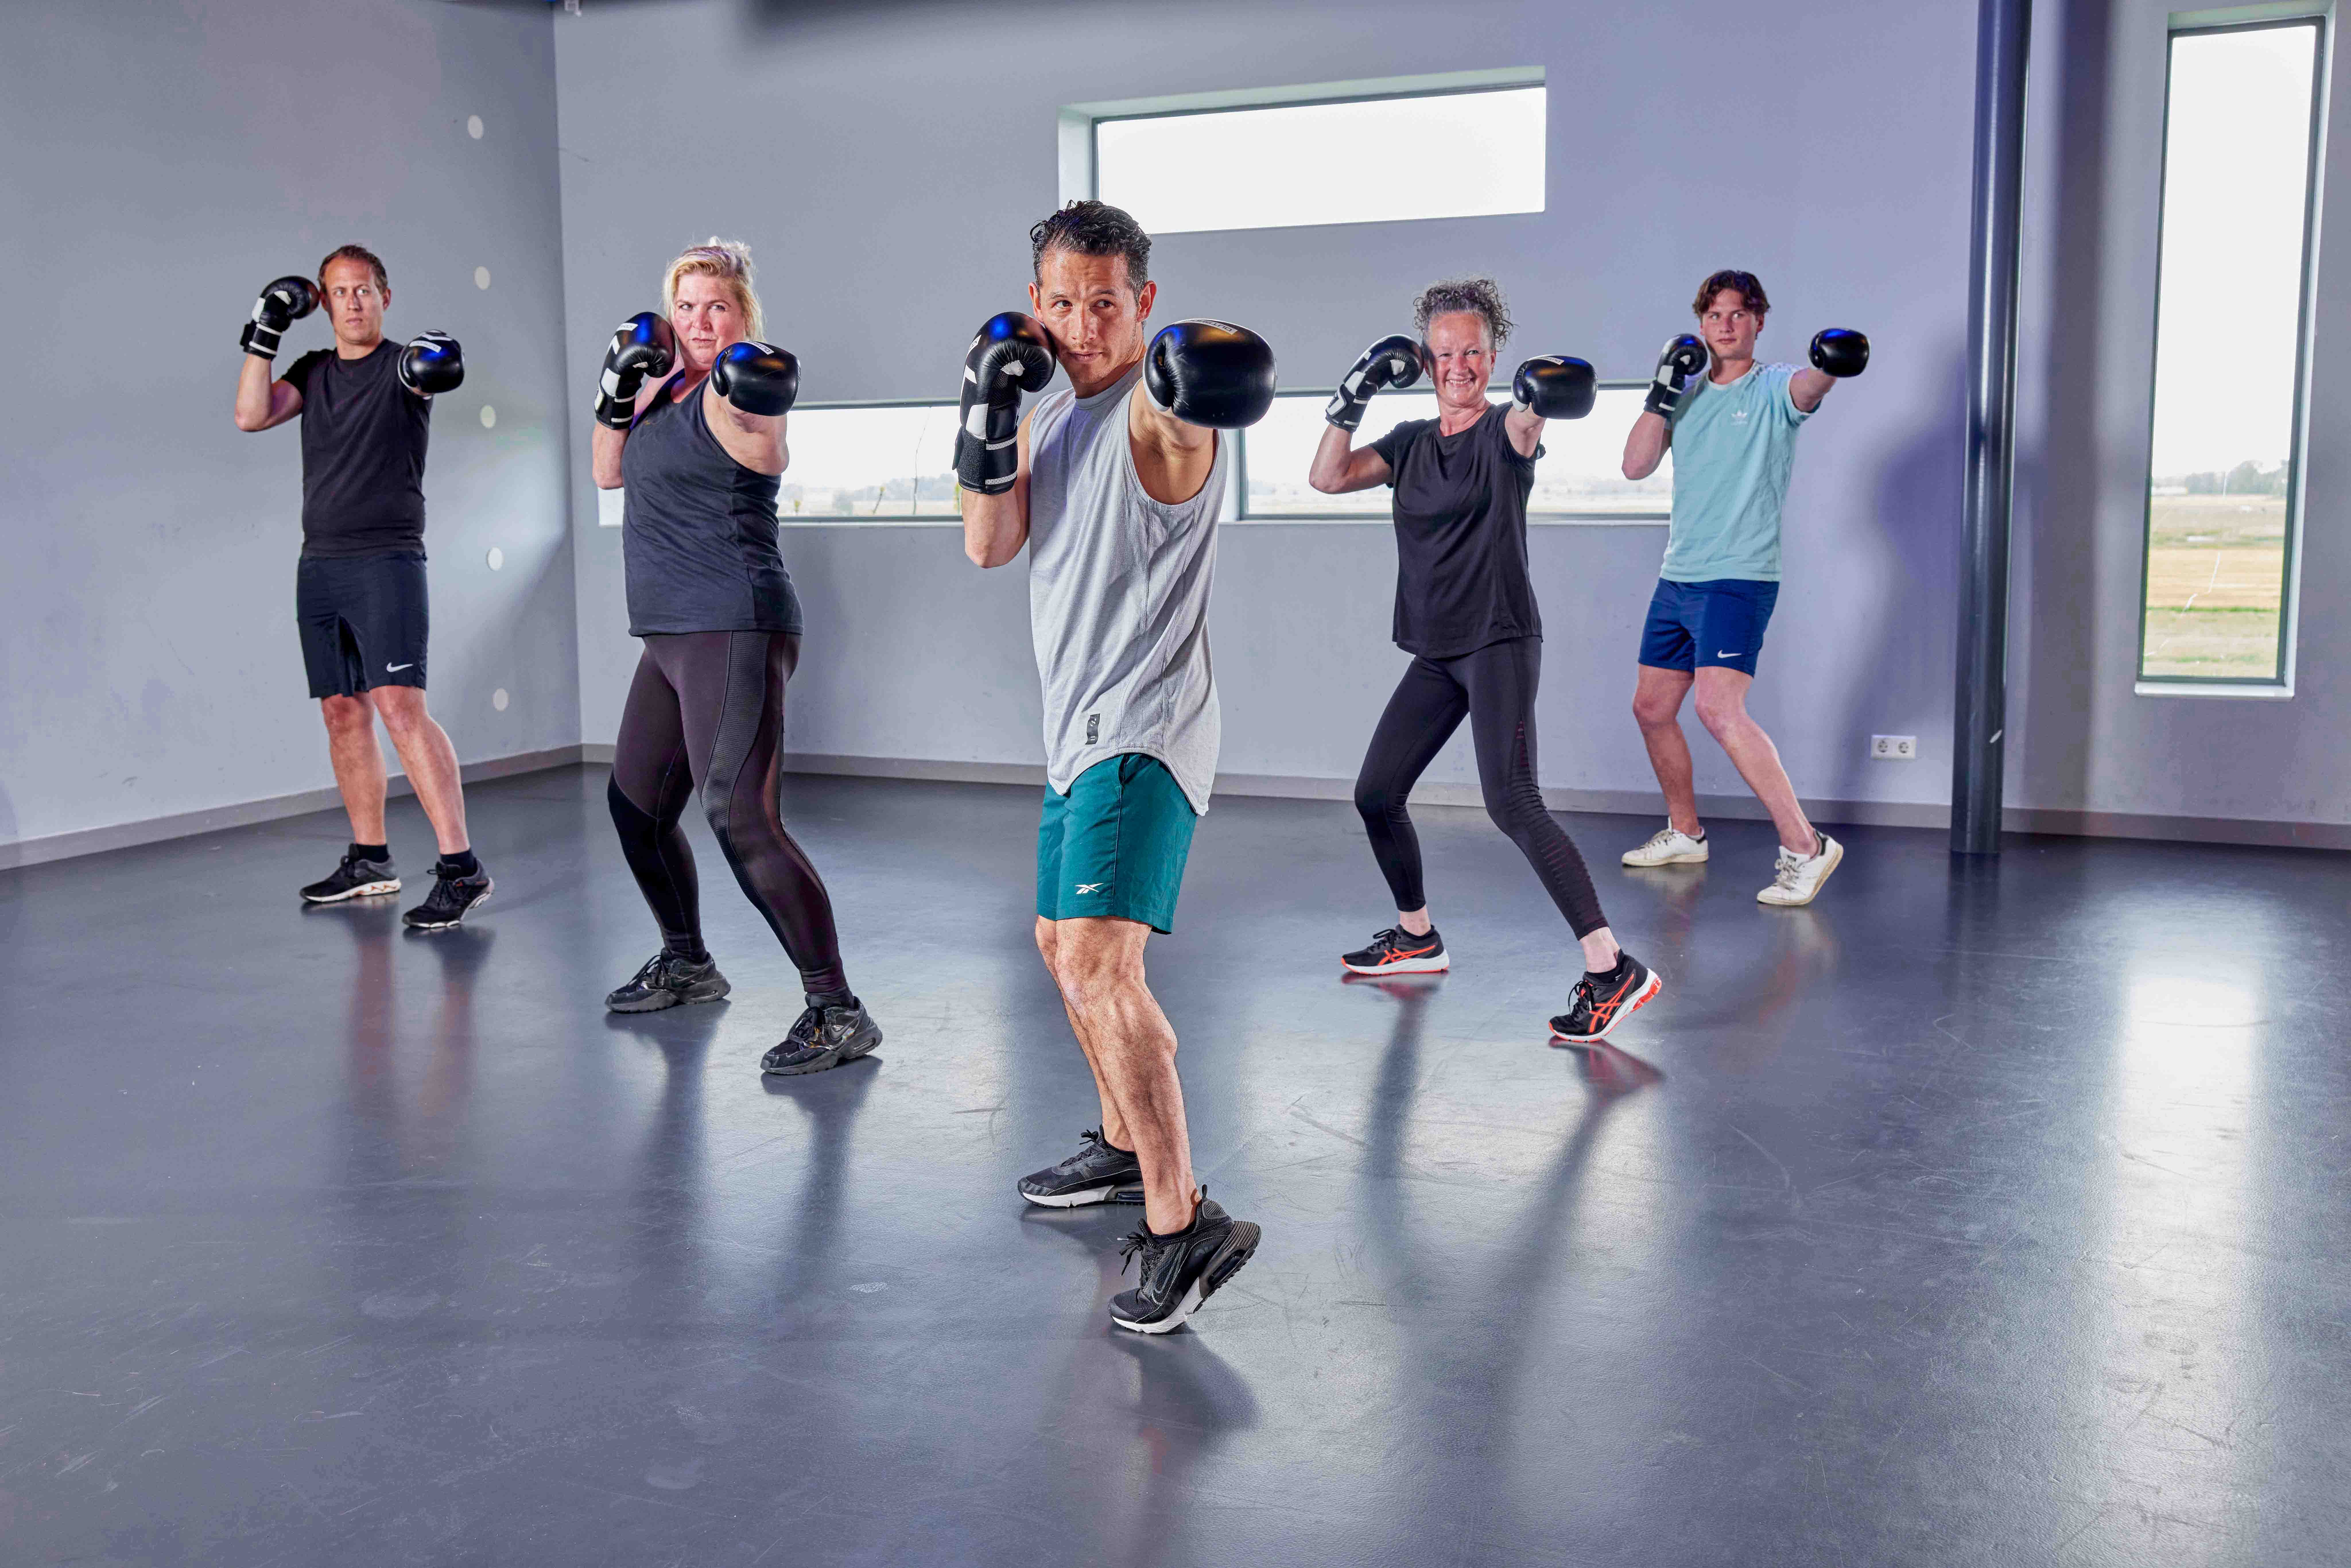 Vijf mensen staan met geheven bokshandschoenen klaar om met jou samen een botje te boksen bij een healthclub van Optisport! 